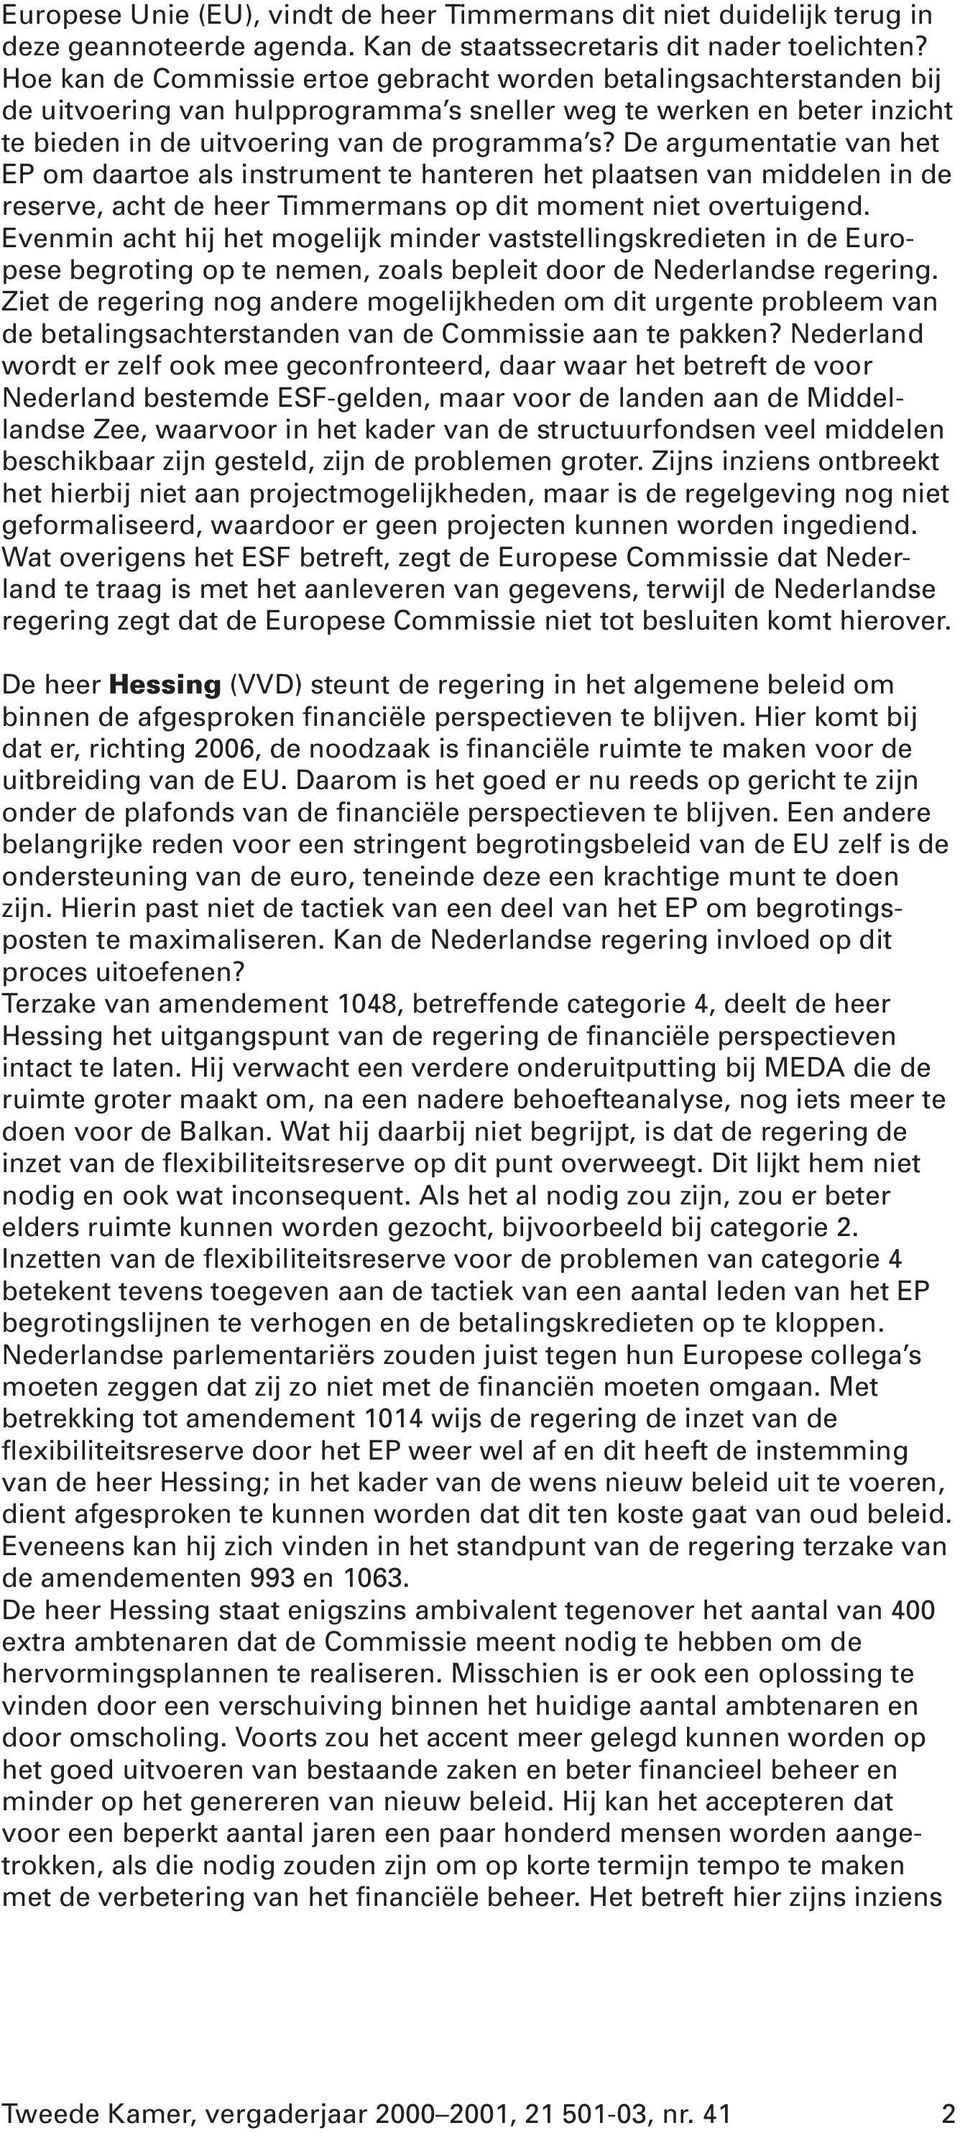 De argumentatie van het EP om daartoe als instrument te hanteren het plaatsen van middelen in de reserve, acht de heer Timmermans op dit moment niet overtuigend.